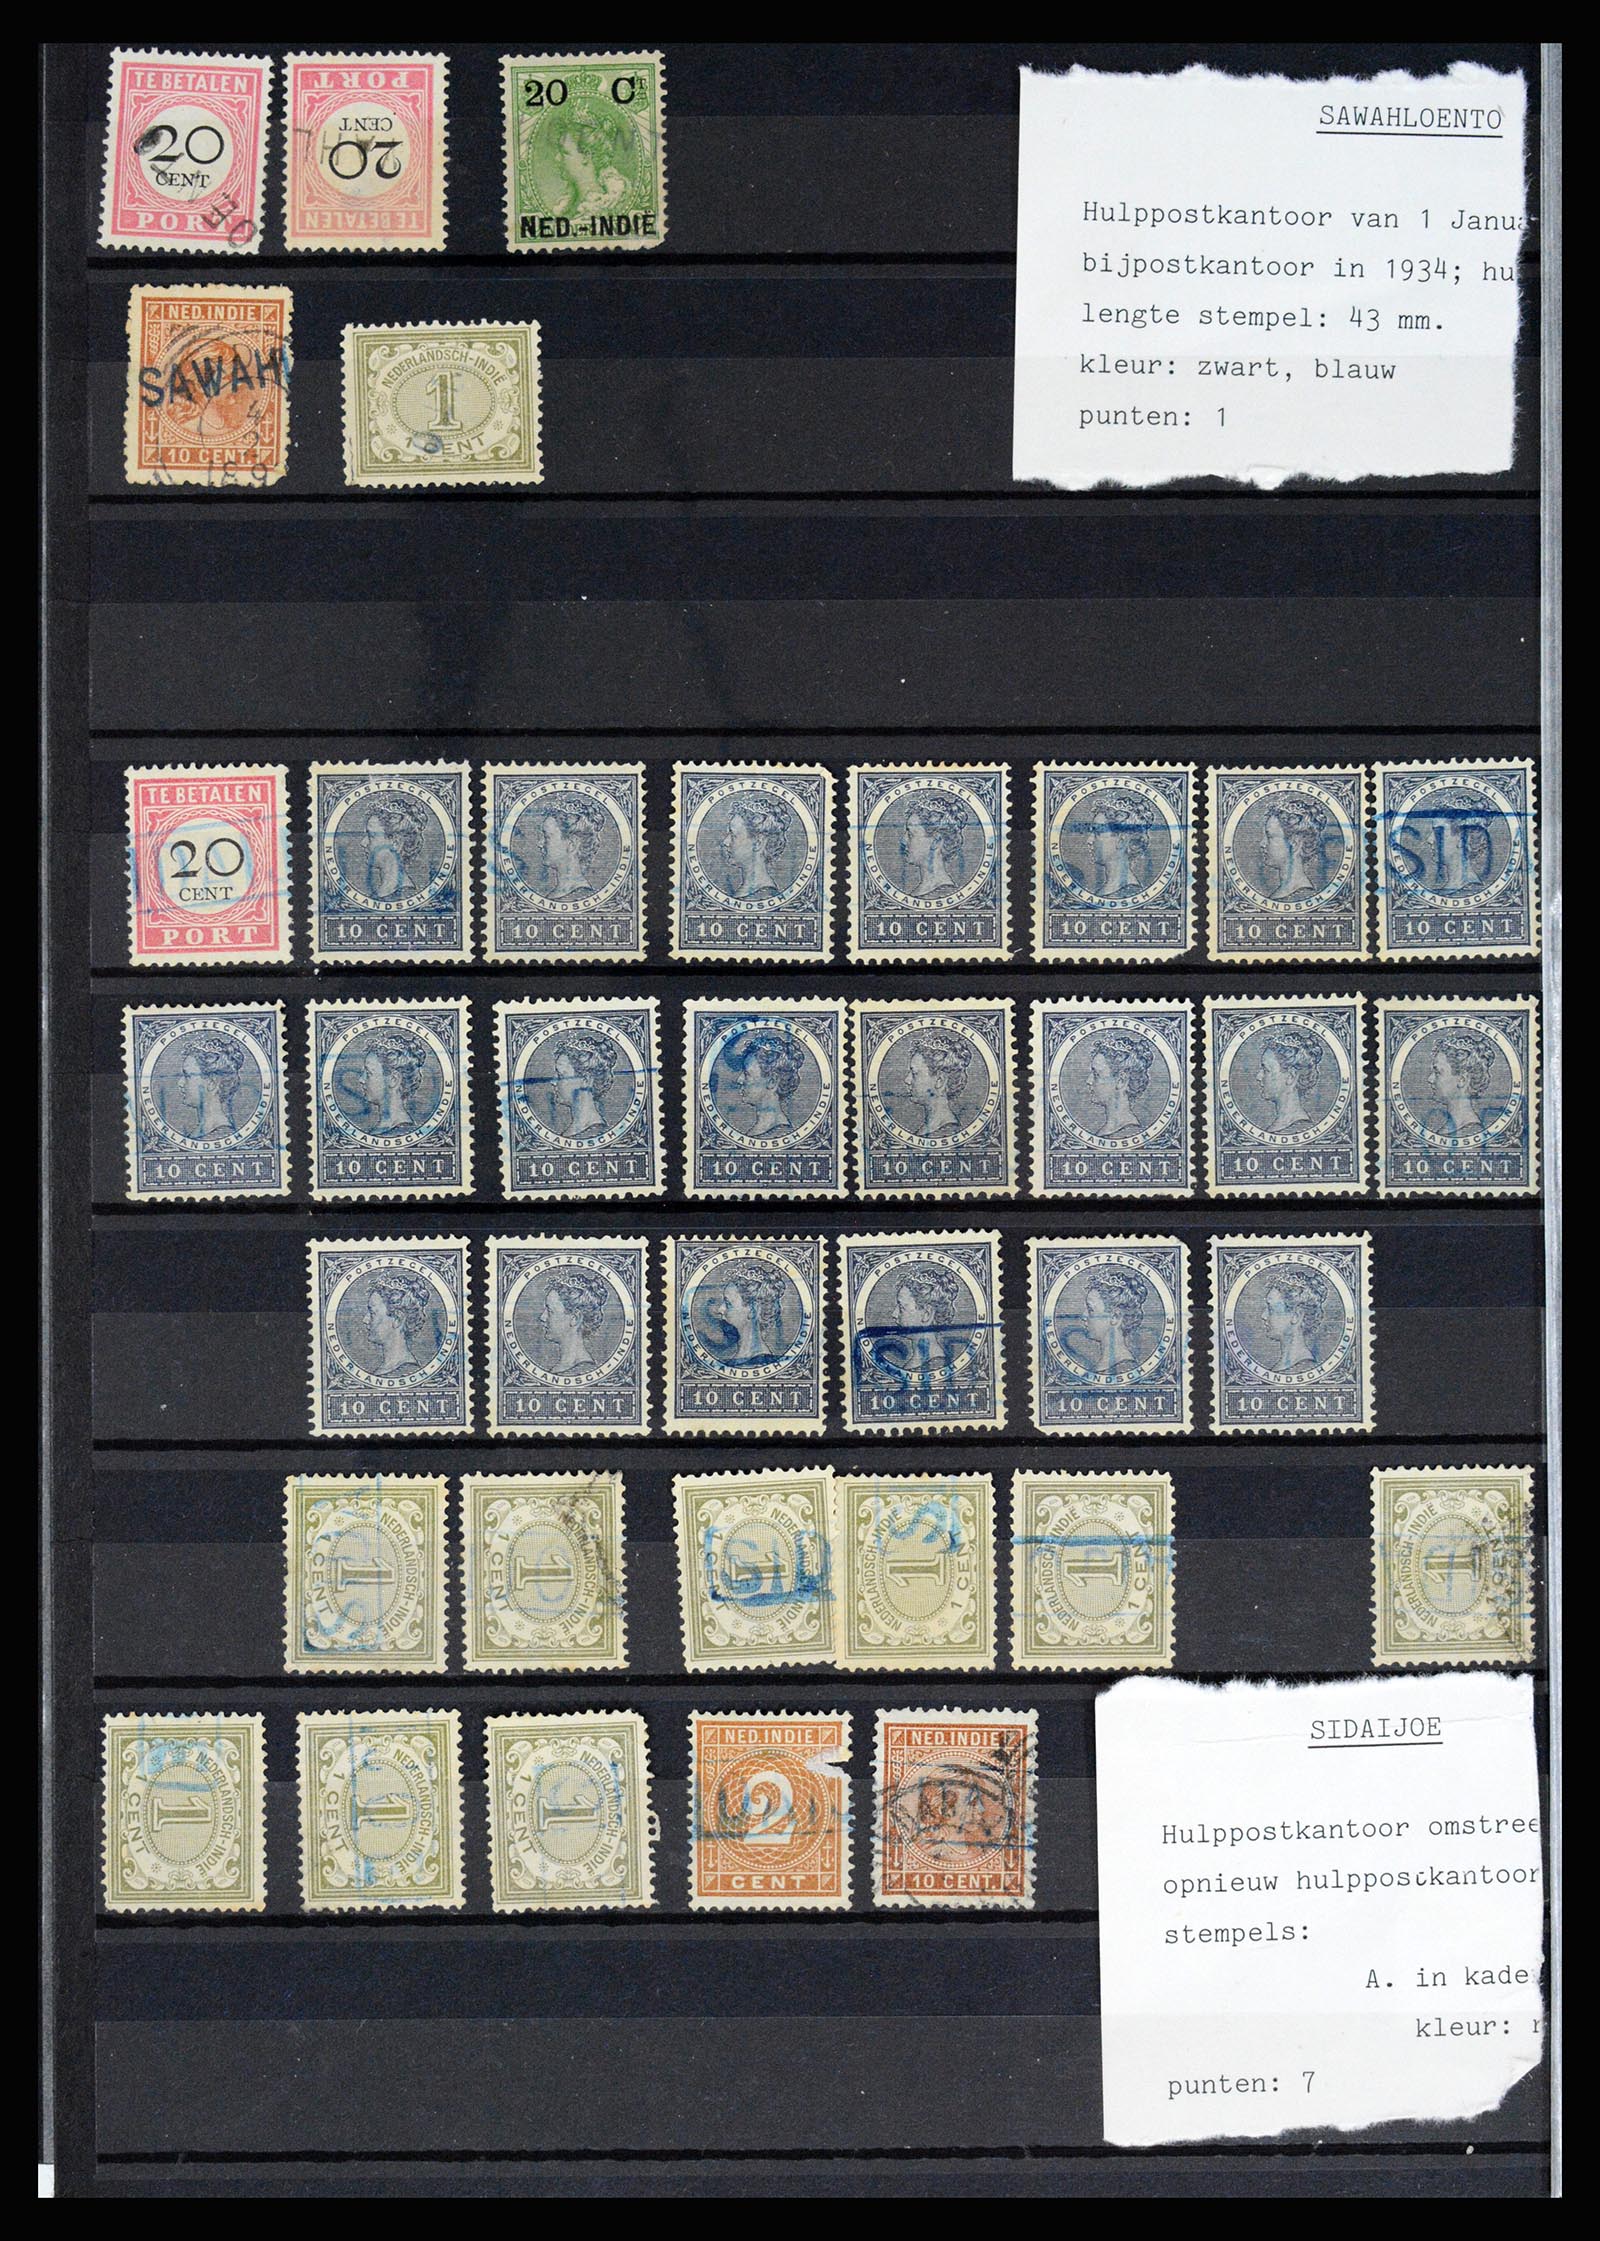 36512 062 - Stamp collection 36512 Nederlands Indië stempels 1872-1930.